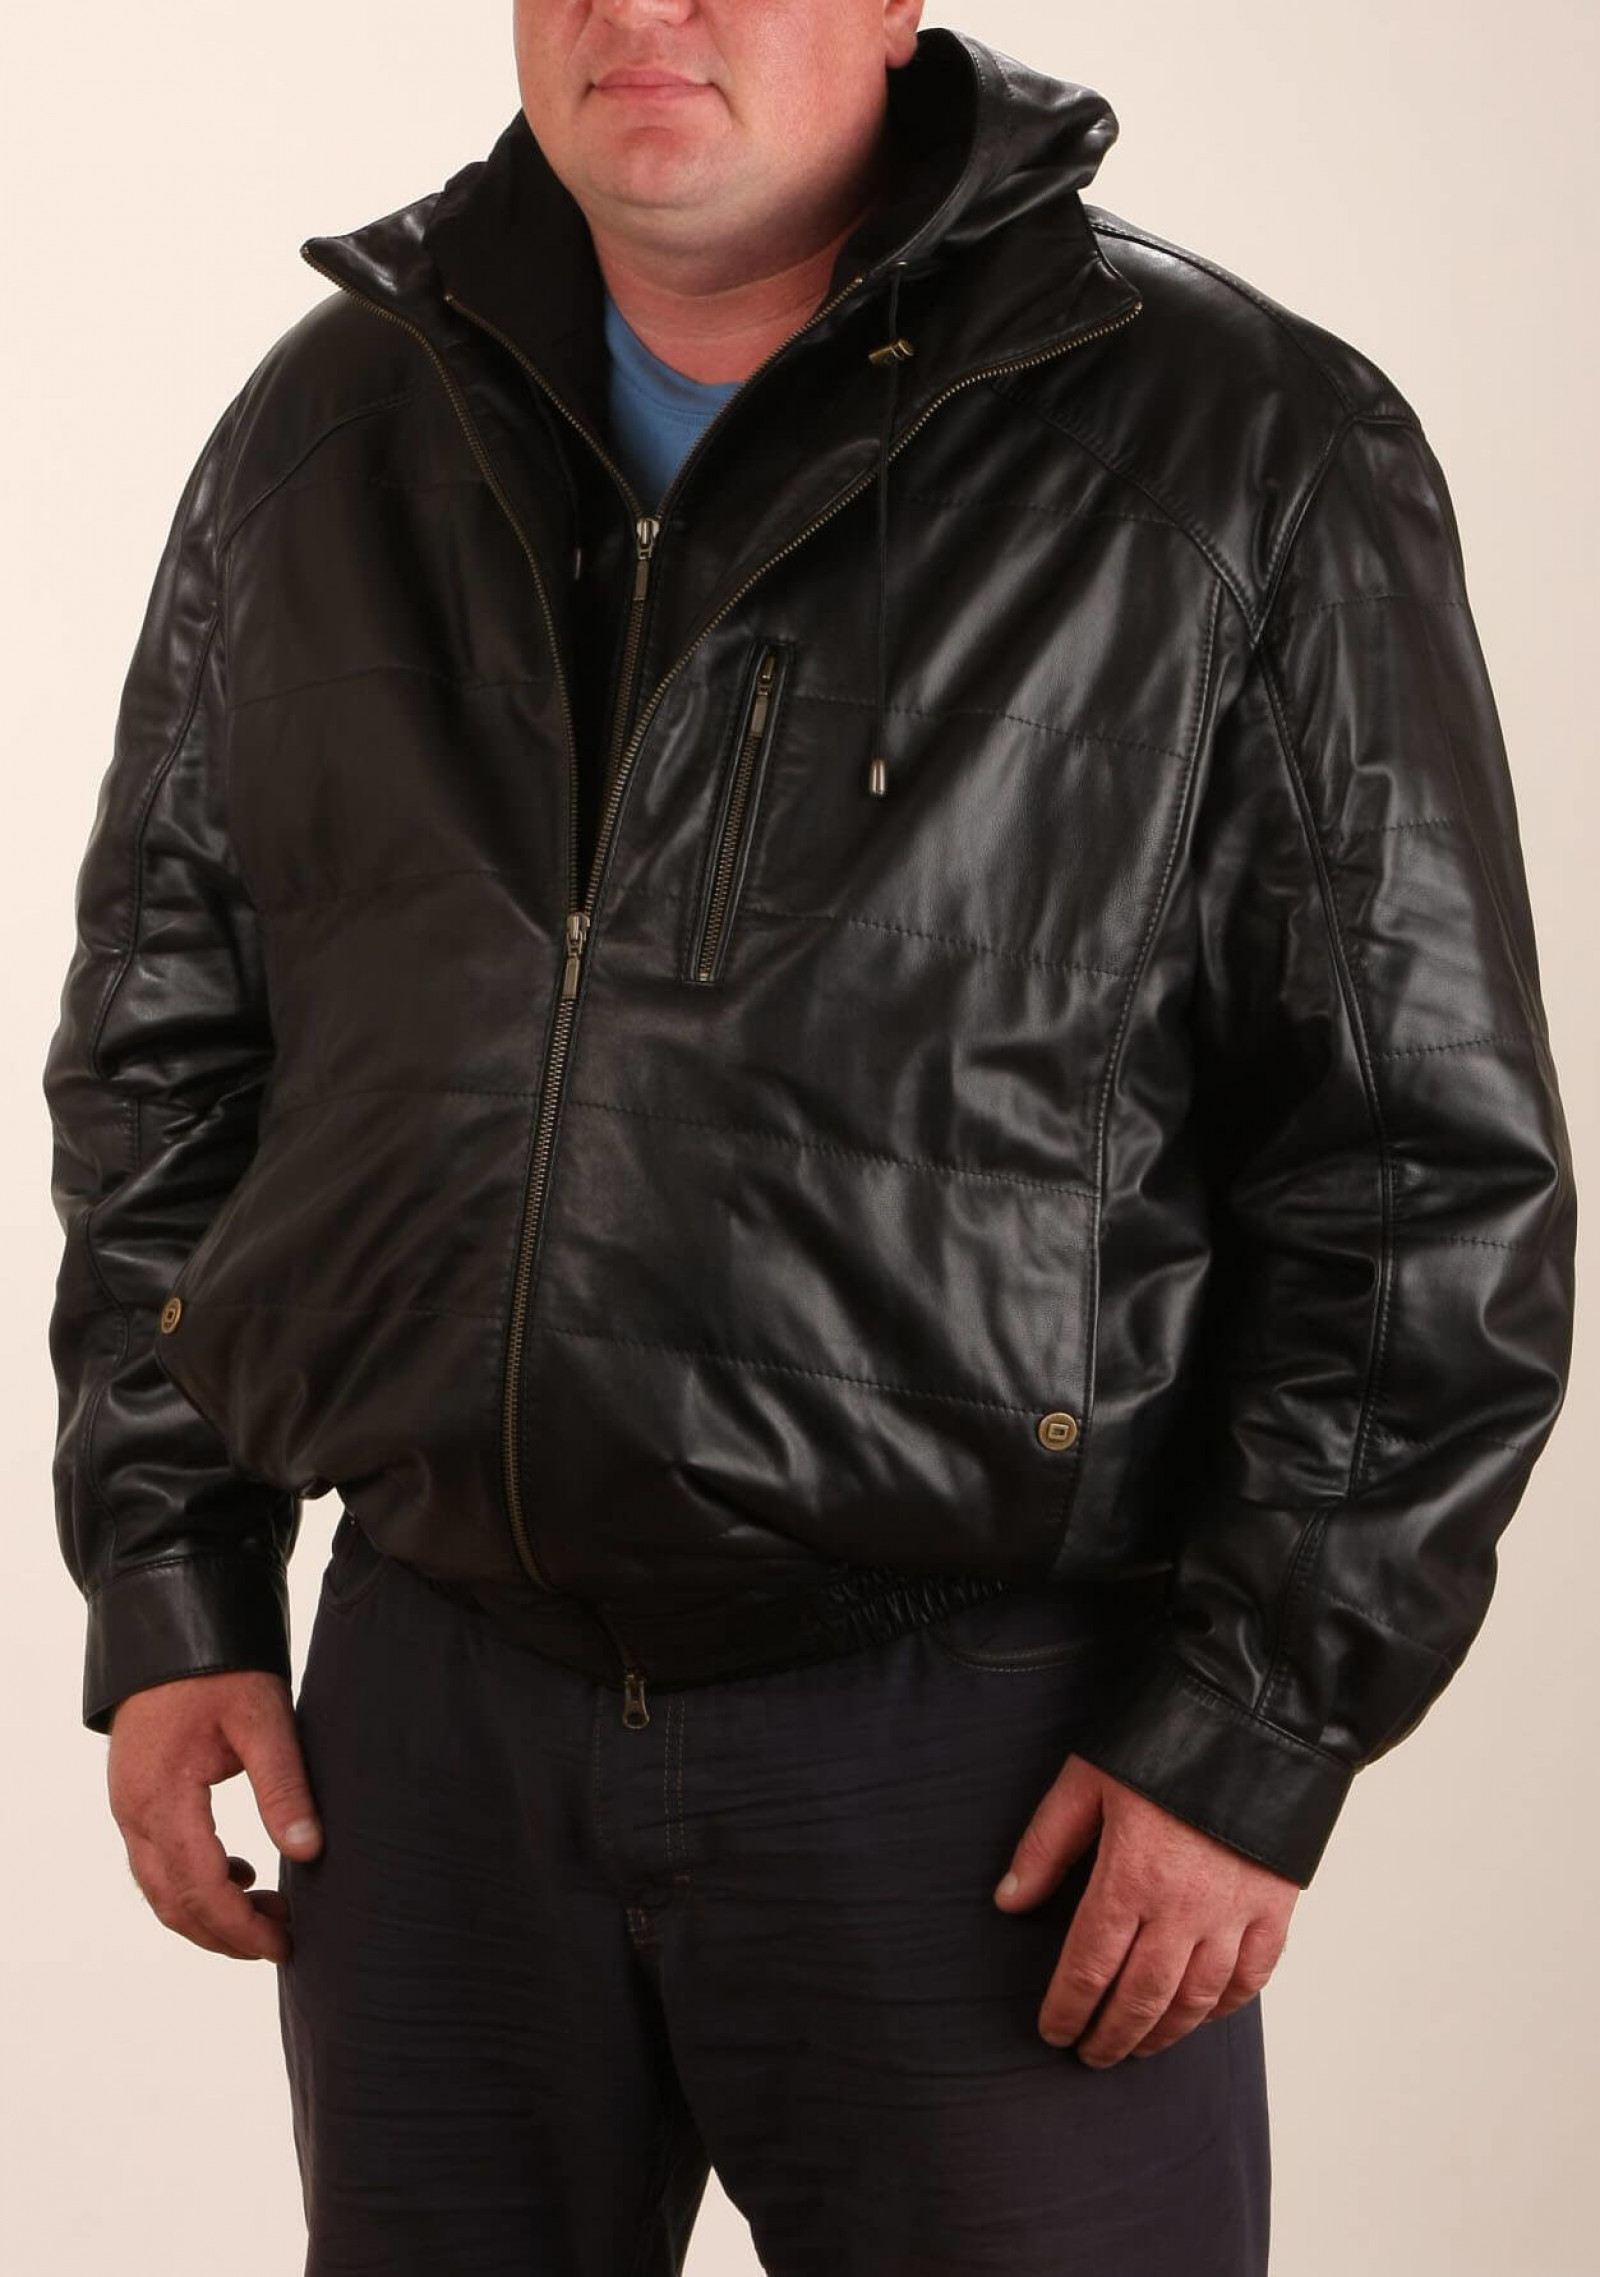 Купить куртку мужскую 64 размер. Куртка пилот 90е. Куртка пилот мужская 64 размер. Кожаная куртка мужская бандитская. Кожаная куртка мужская больших размеров.